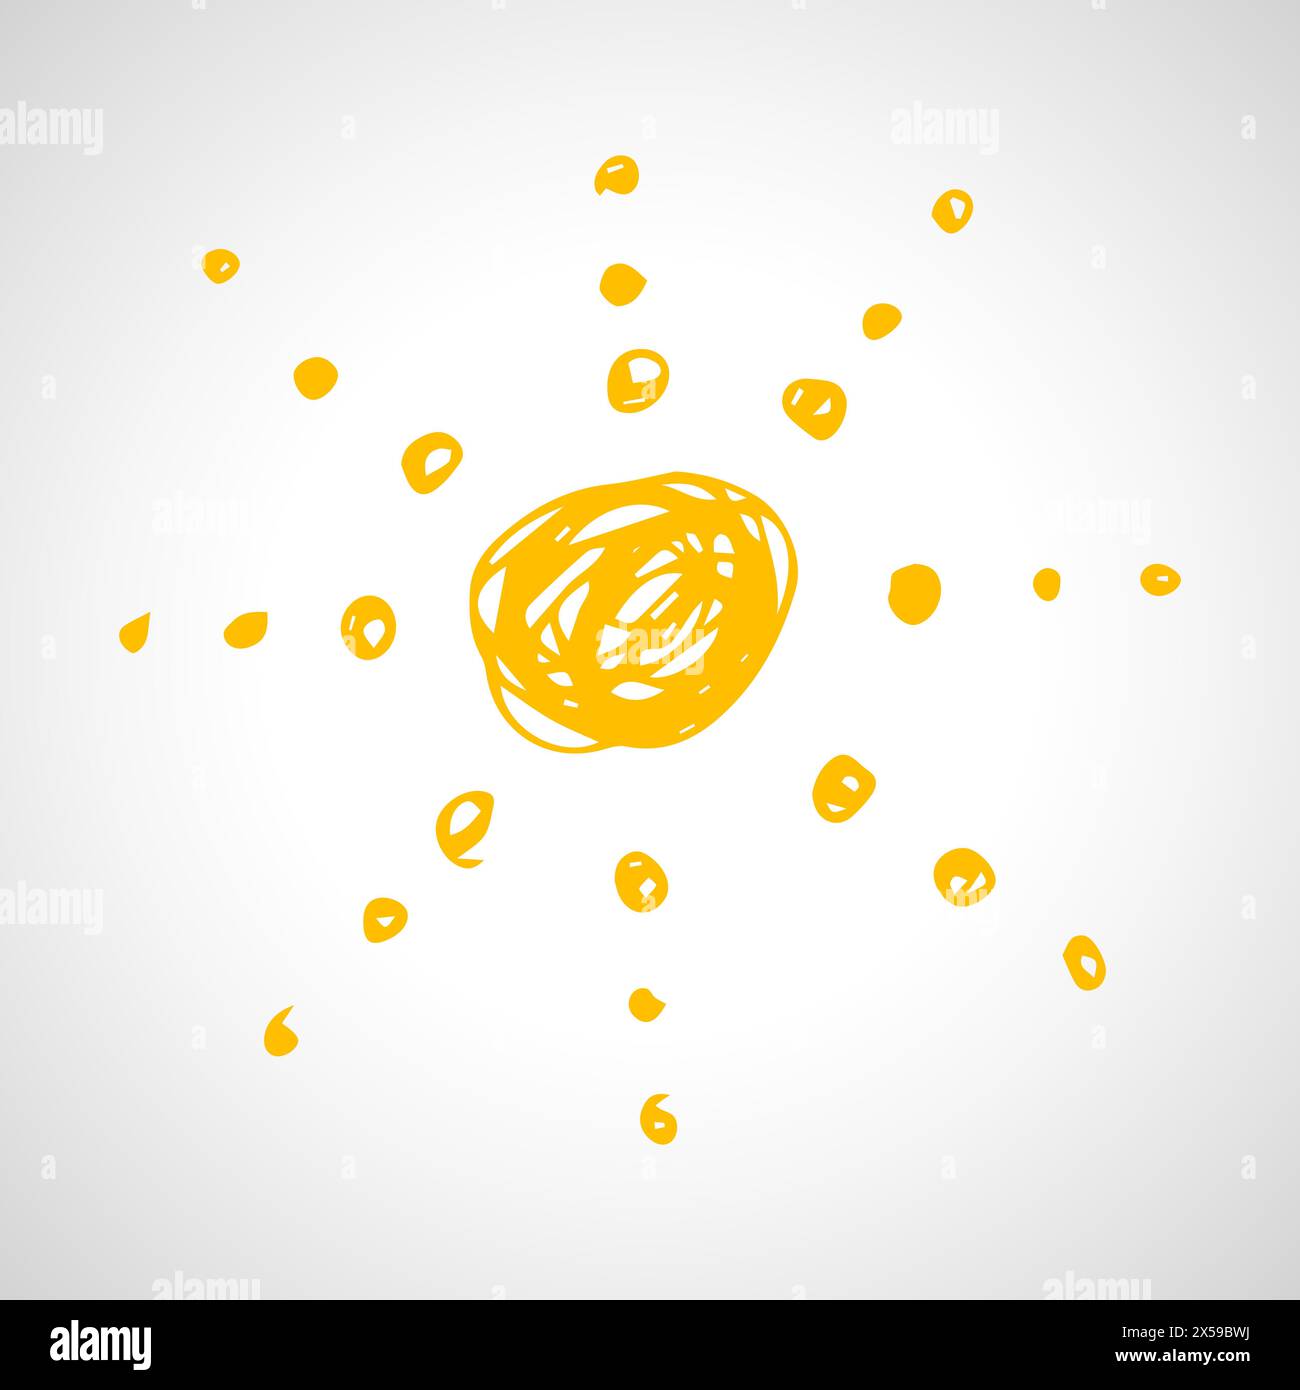 Handgezeichnete Sonne. Einfache Skizzensonne. Sonnensymbol. Gelbes Doodle isoliert auf weißem Hintergrund. Vektorabbildung. Stock Vektor